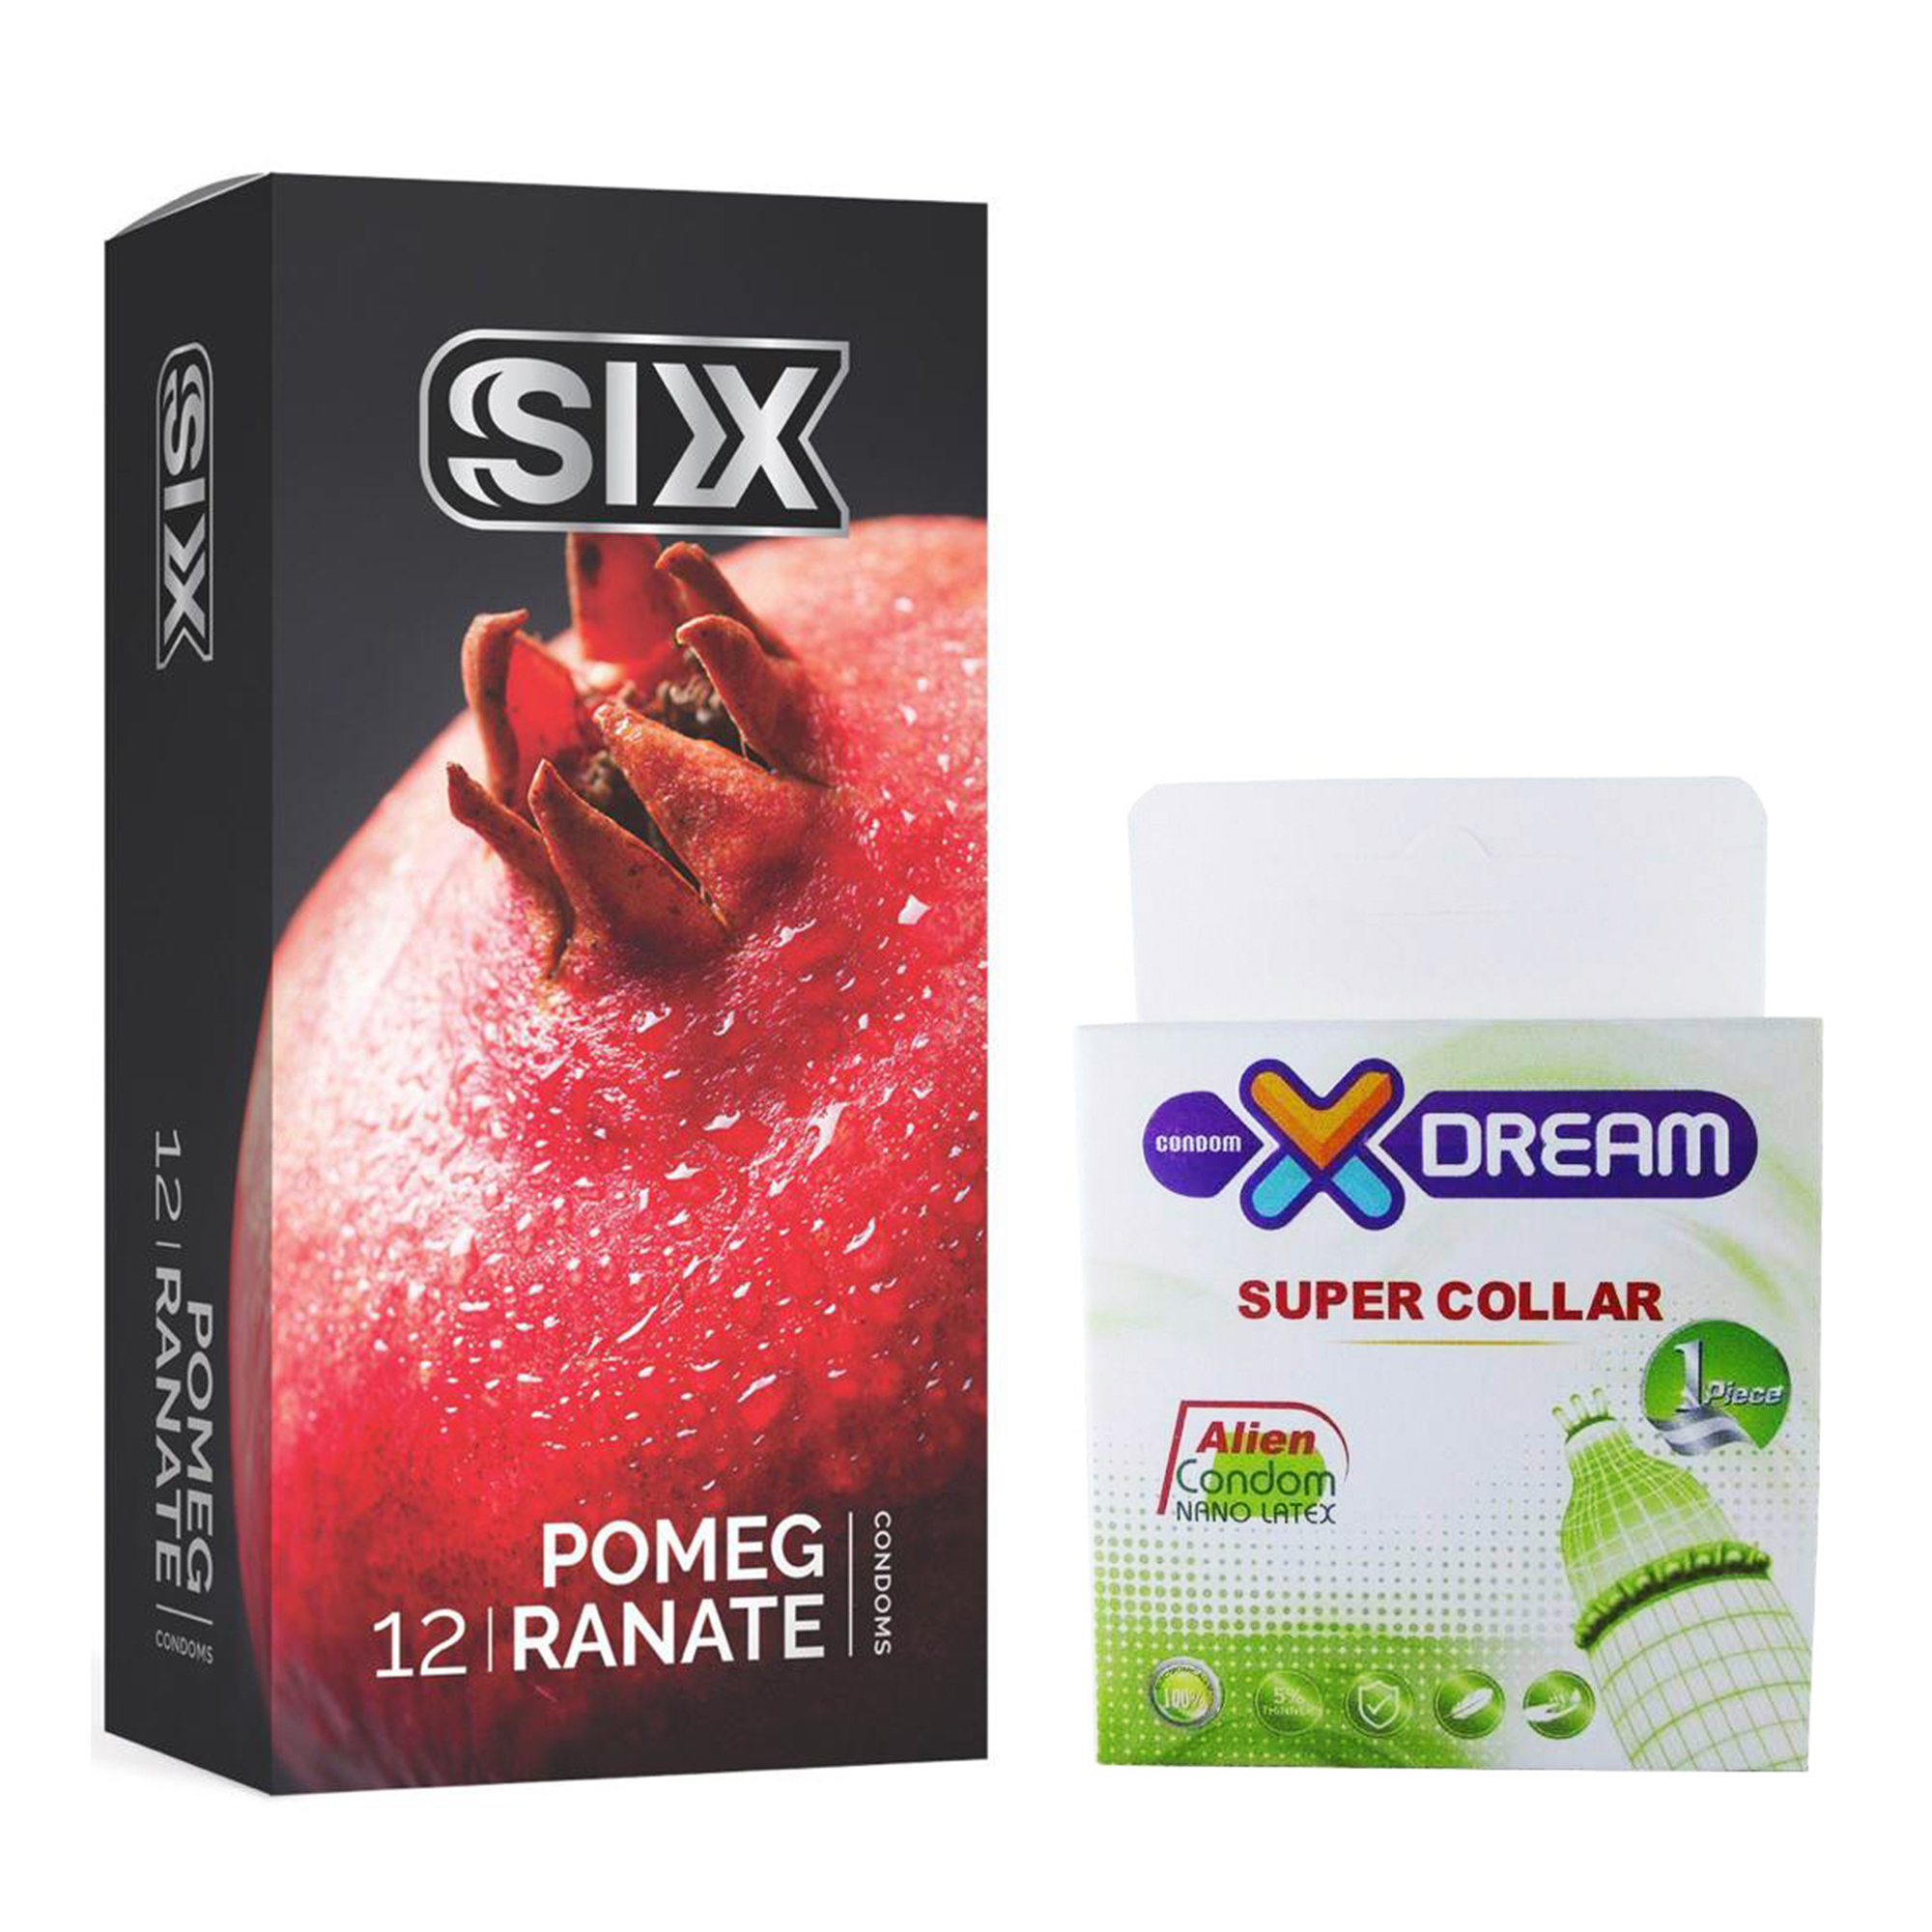 کاندوم سیکس مدل Pomegranate بسته ۱۲ عددی به همراه کاندوم ایکس دریم مدل Super Collar